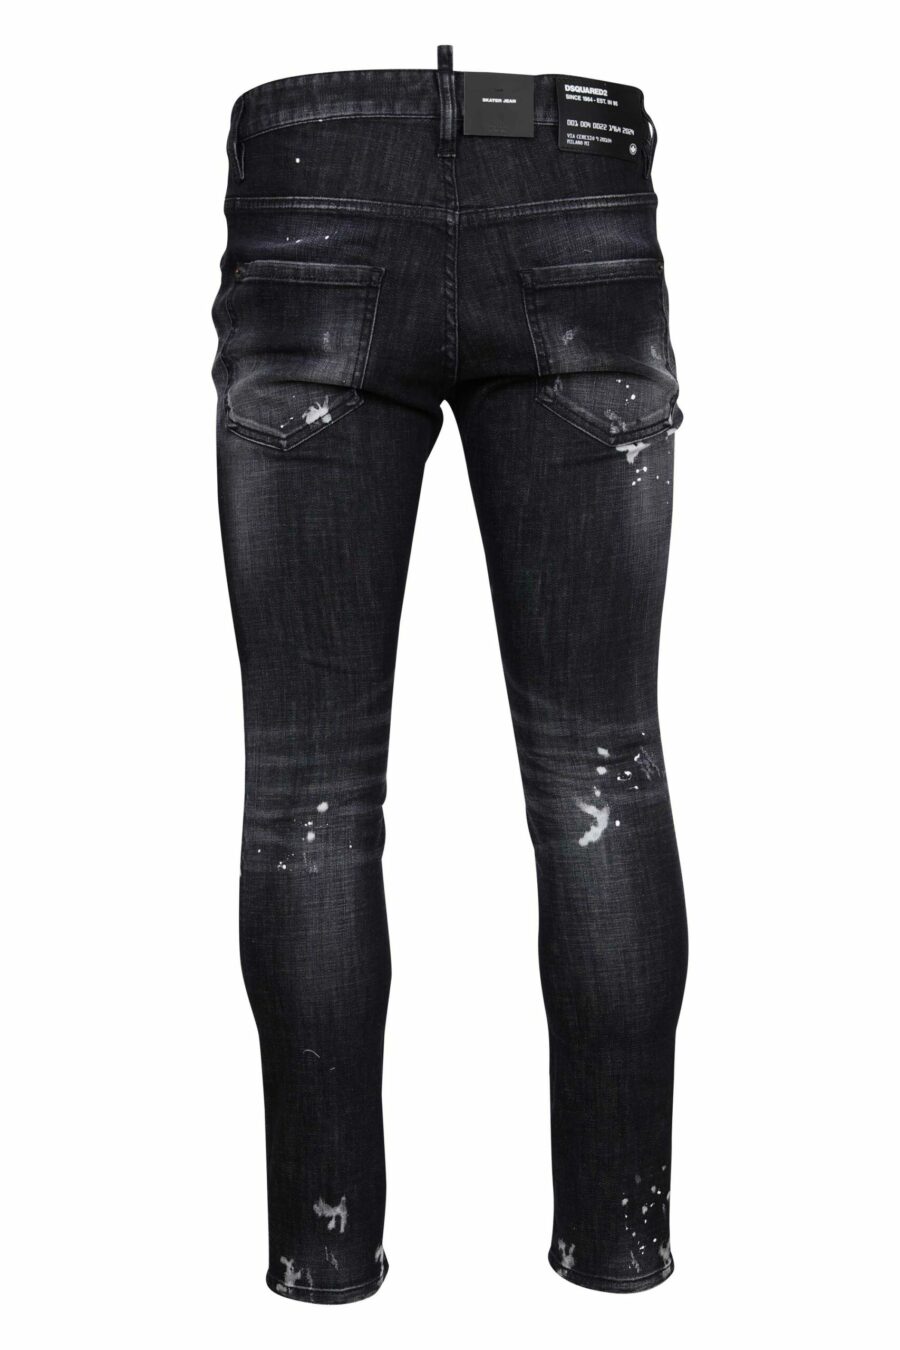 Pantalon noir "skater jean" déchiré et semi-usé - 8054148300746 1 à l'échelle